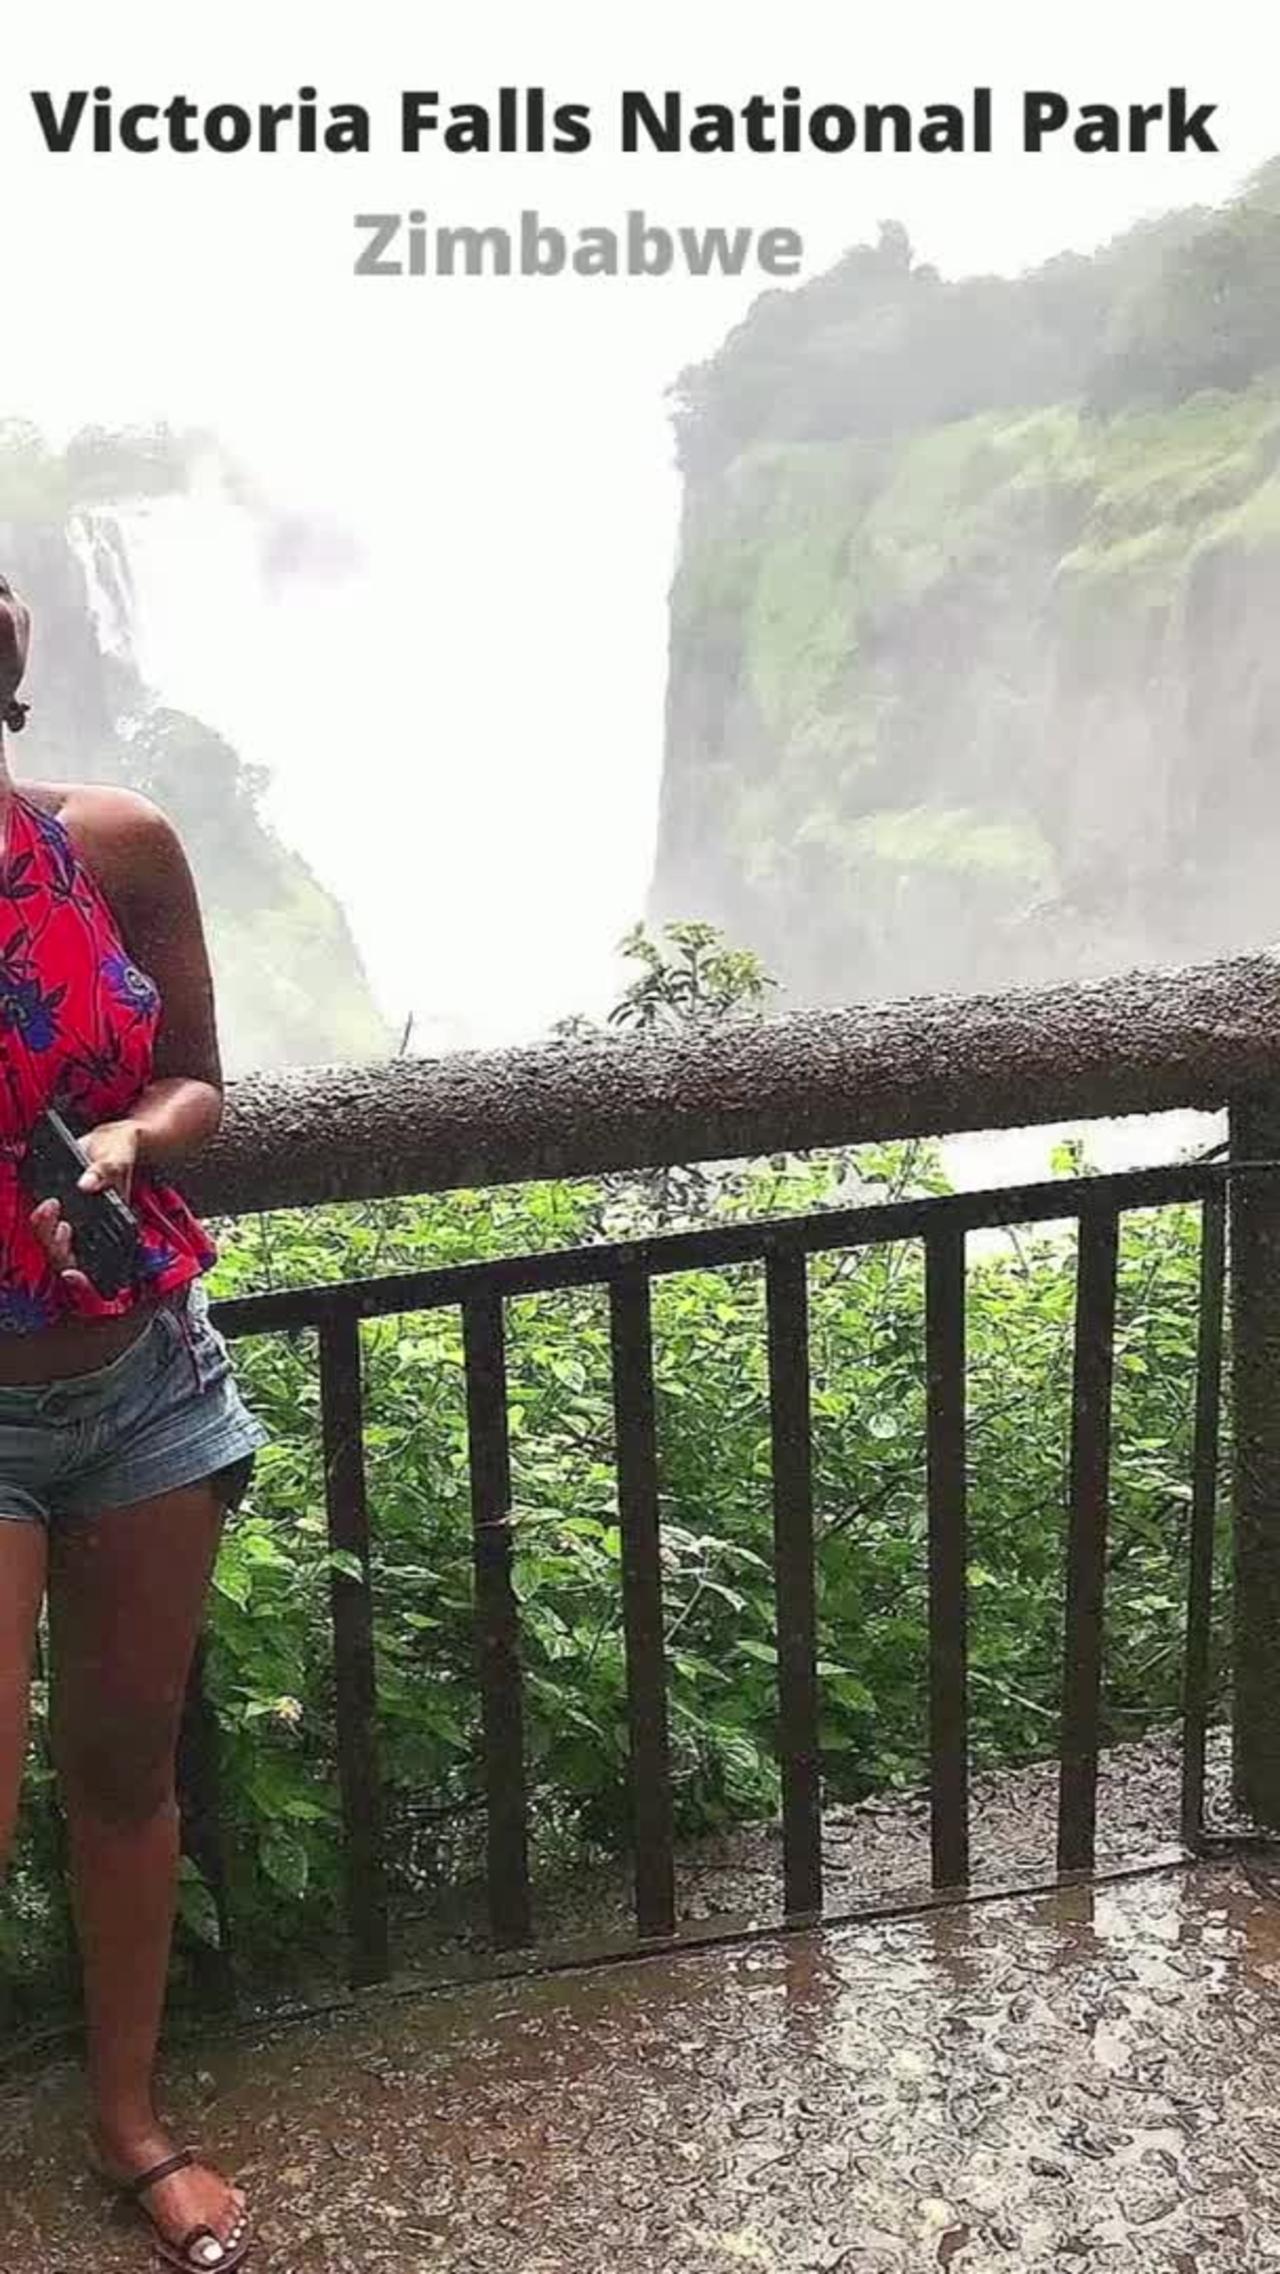 Victoria Falls - Zambia, Zimbabwe jaw-dropping scenery #shorts